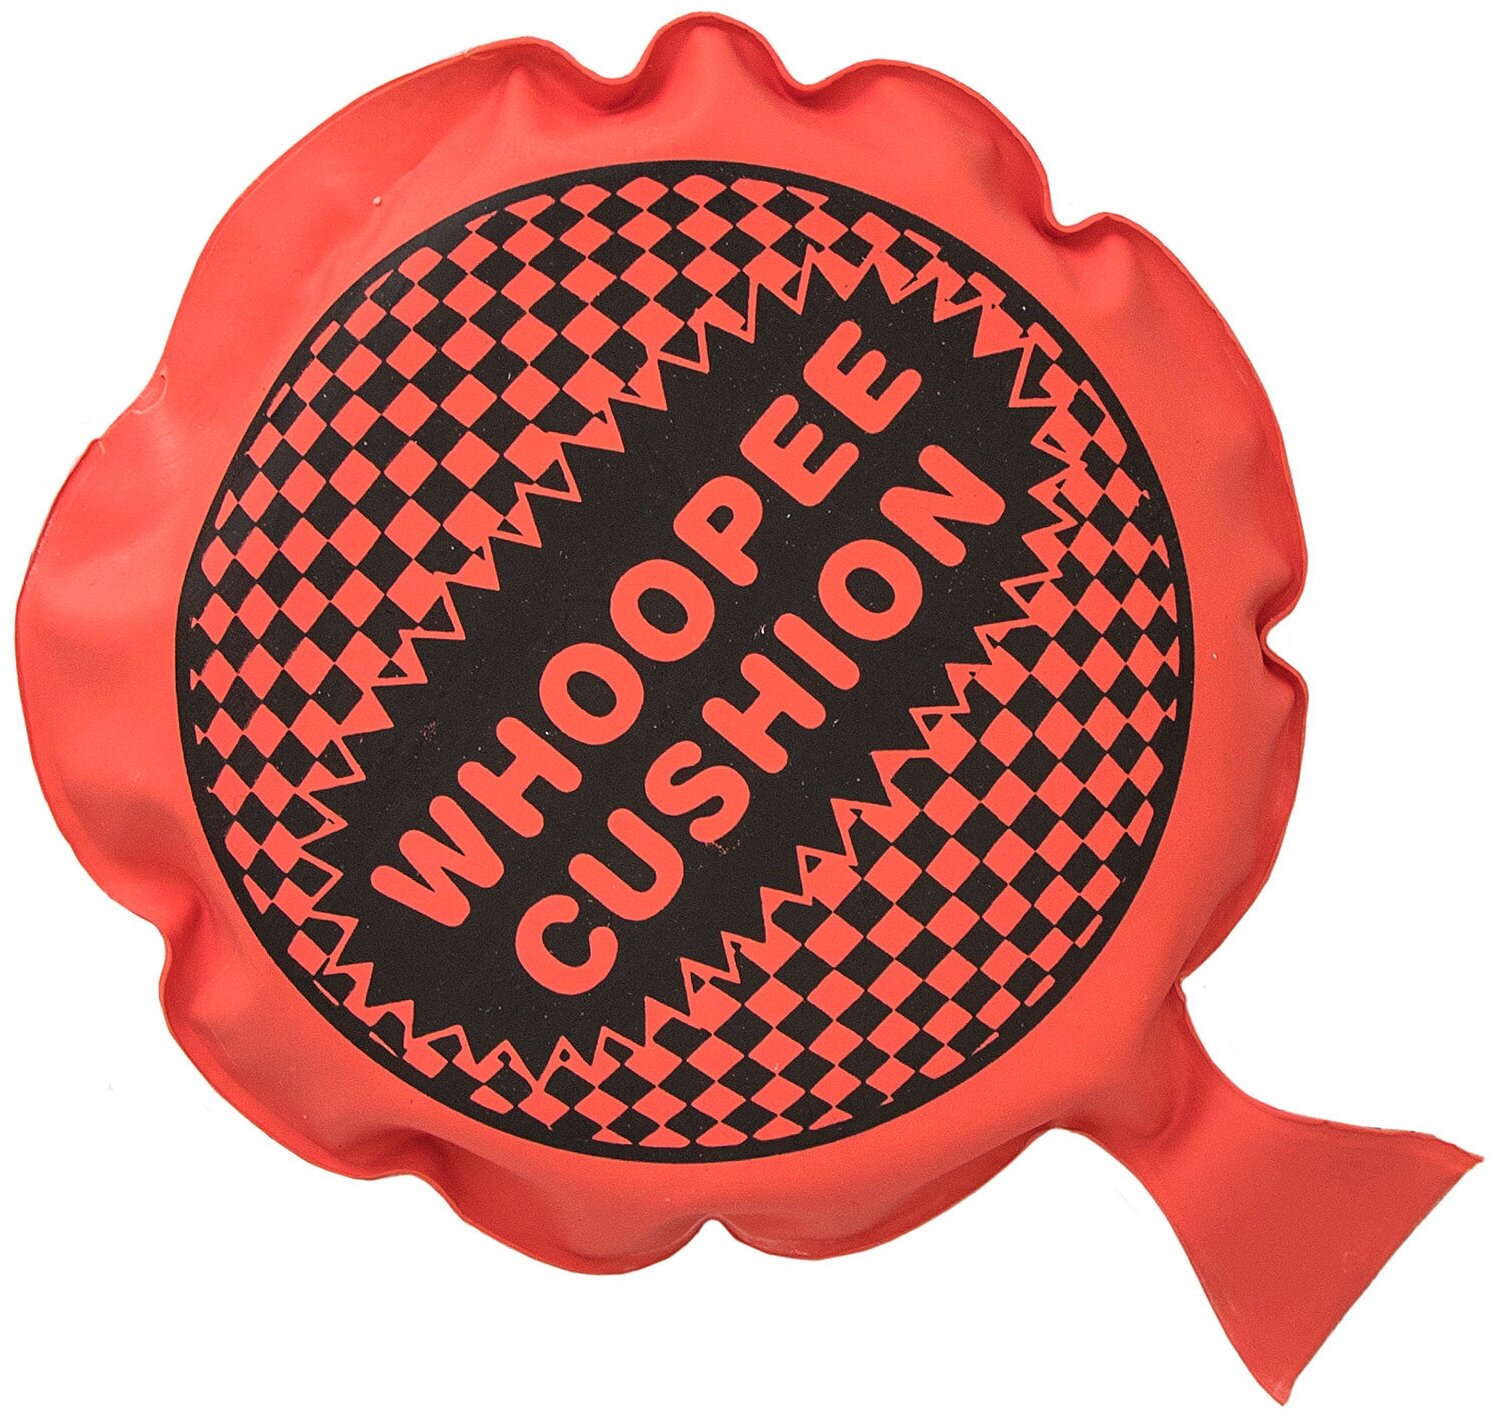 Подушка-пердушка Whopee Cushion 16.5 см красная розыгрыш, подарок мальчику, девочке, универсальный подарок детский с приколом, шуткой